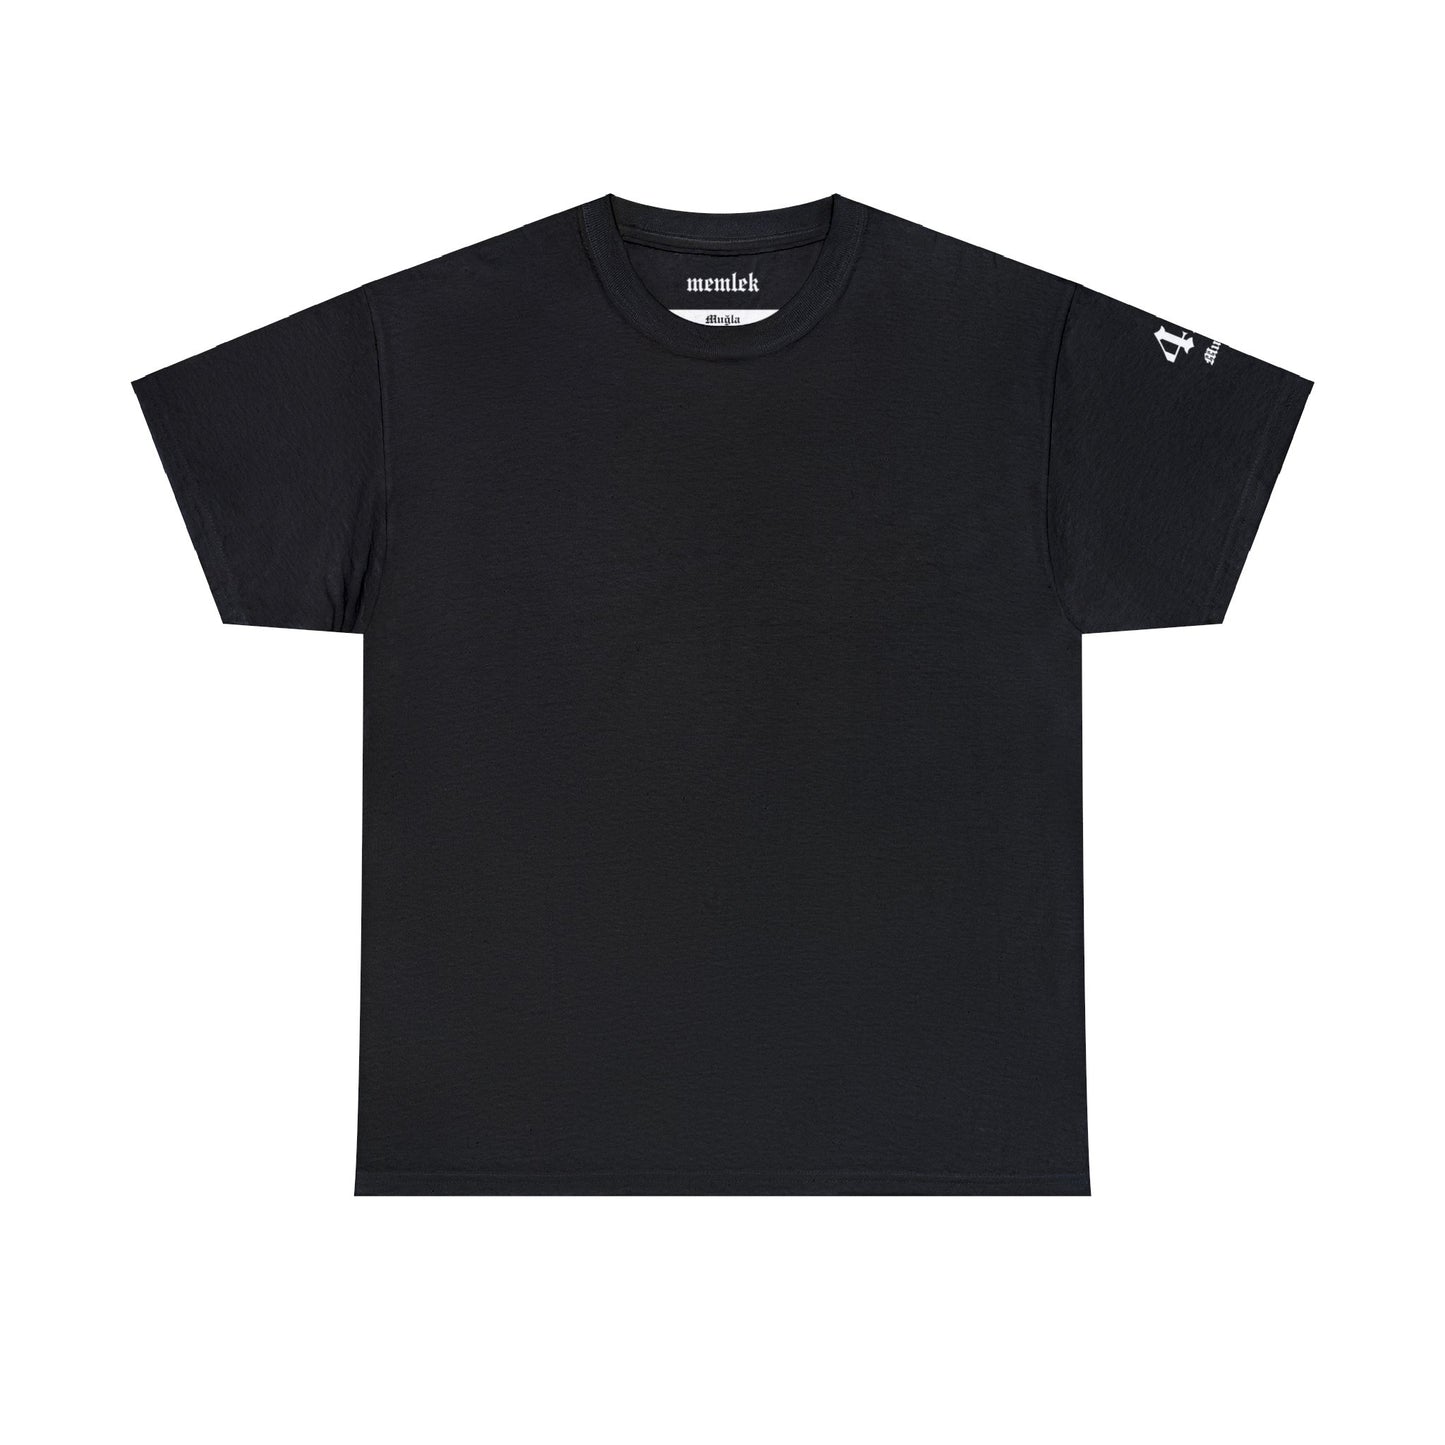 Şehirim - 48 Muğla - T-Shirt - Back Print - Black